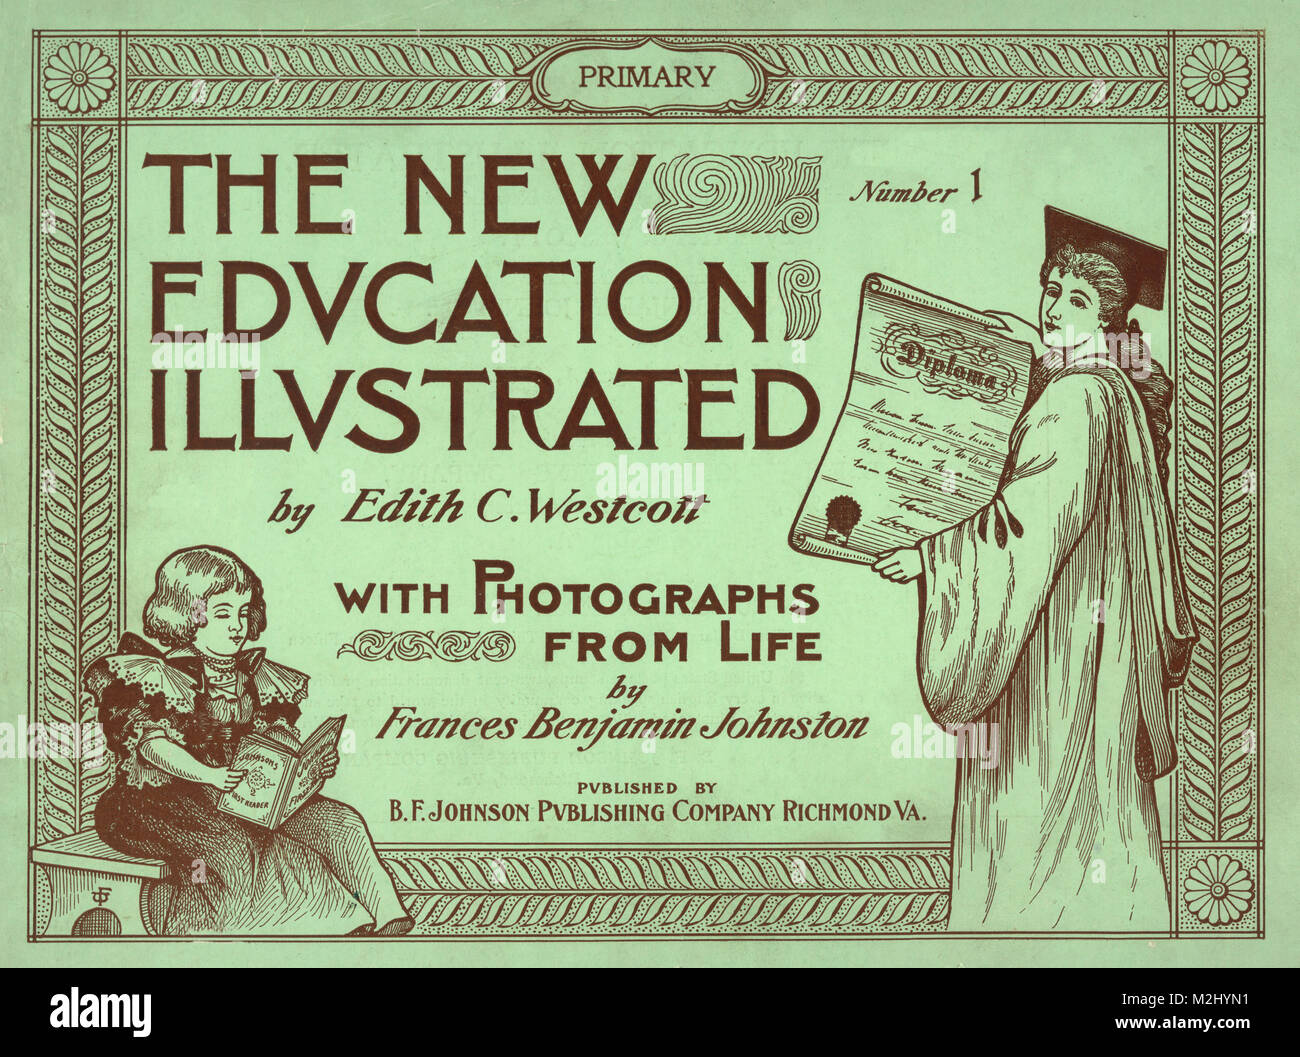 Nuova istruzione primaria illustrata, 1900 Foto Stock